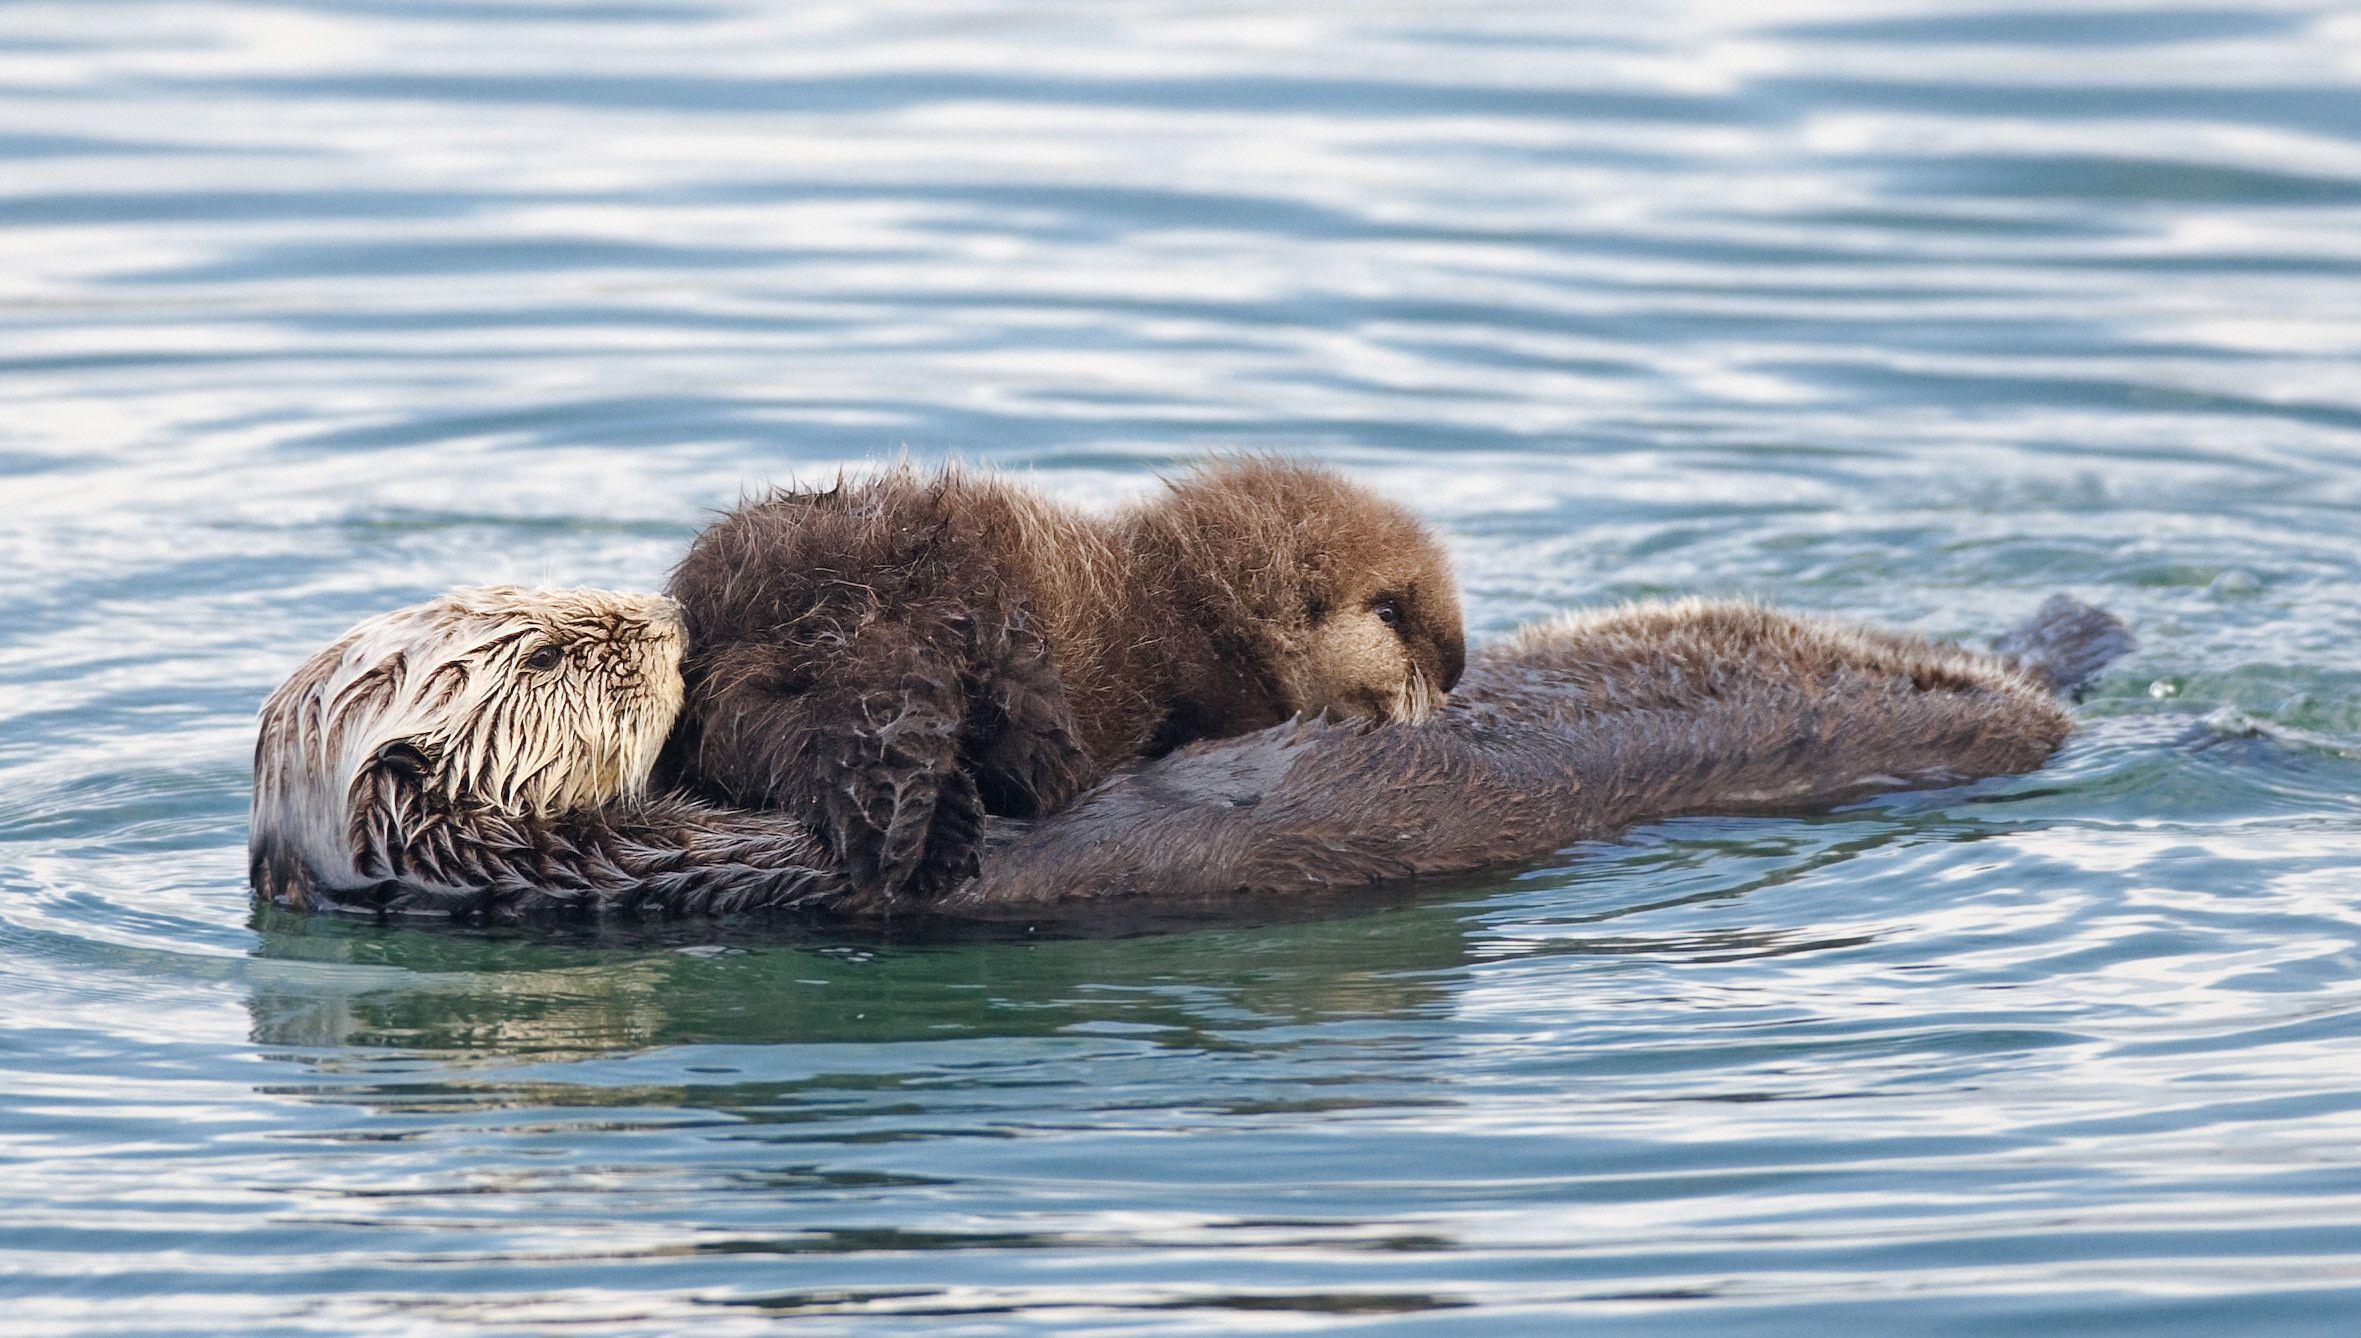 Sea otter, the free encyclopedia